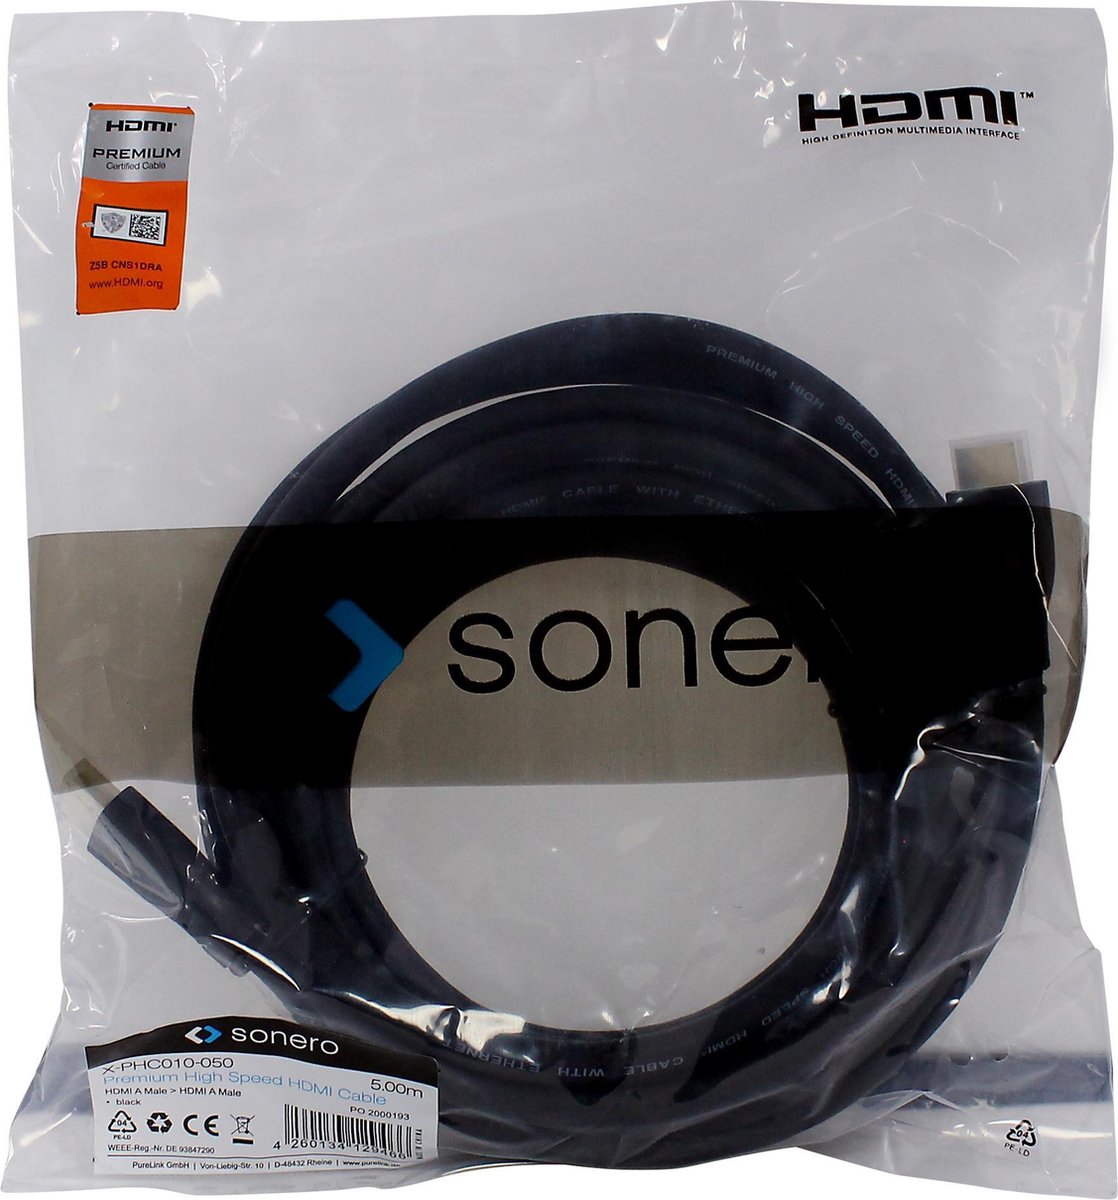 Sonero HDMI kabel high quality 1 tm 5 meter verkrijgbaar